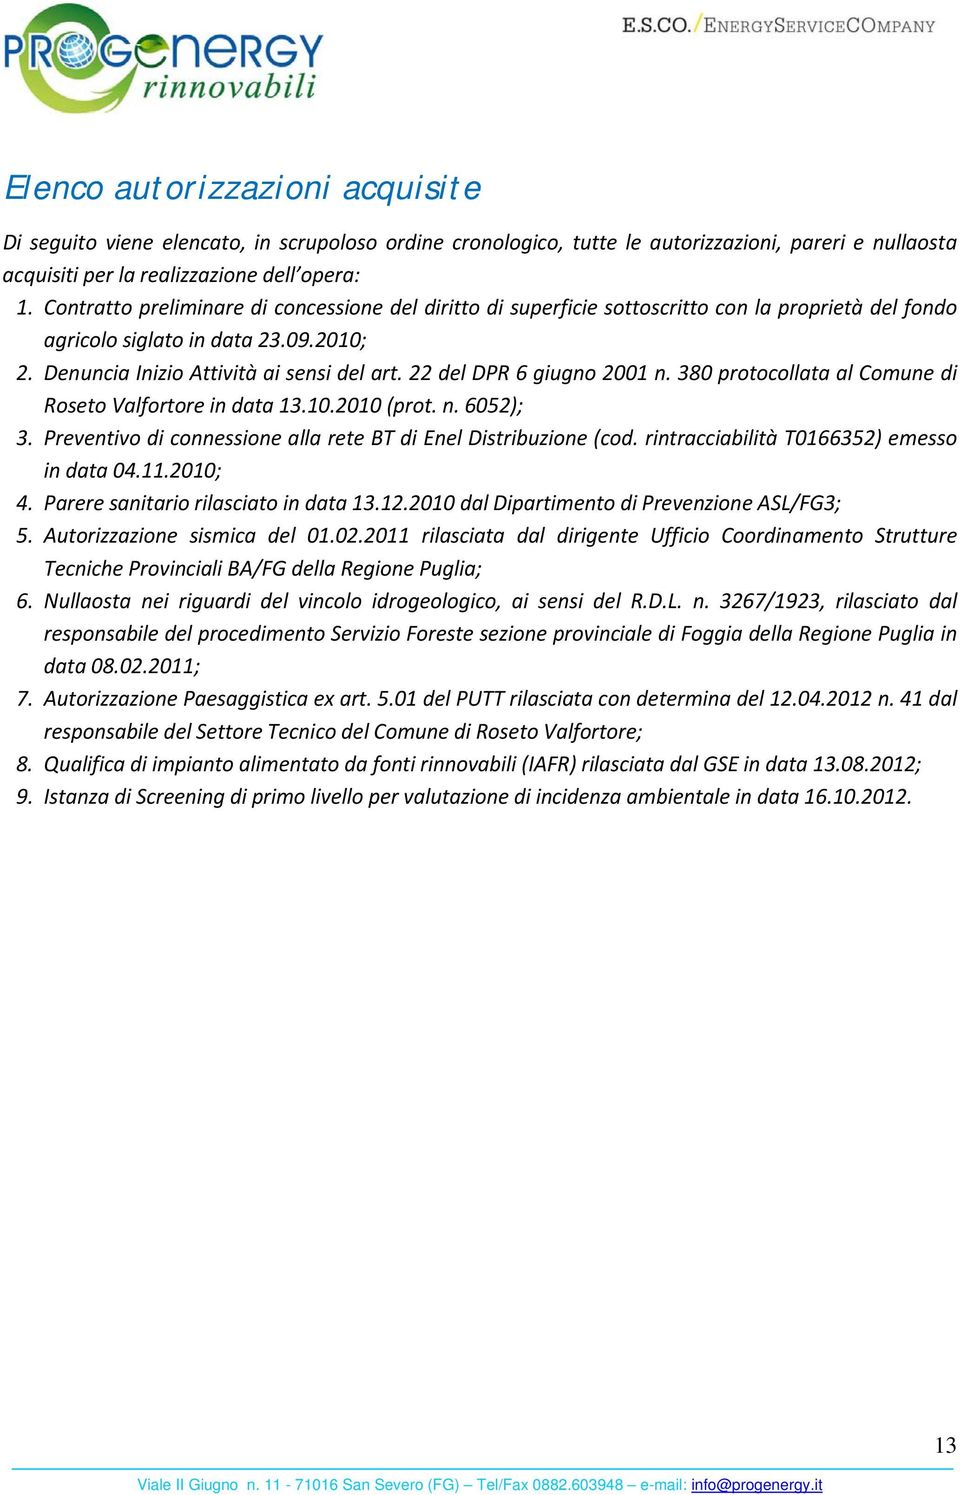 22 del DPR 6 giugno 2001 n. 380 protocollata al Comune di Roseto Valfortore in data 13.10.2010 (prot. n. 6052); 3. Preventivo di connessione alla rete BT di Enel Distribuzione (cod.